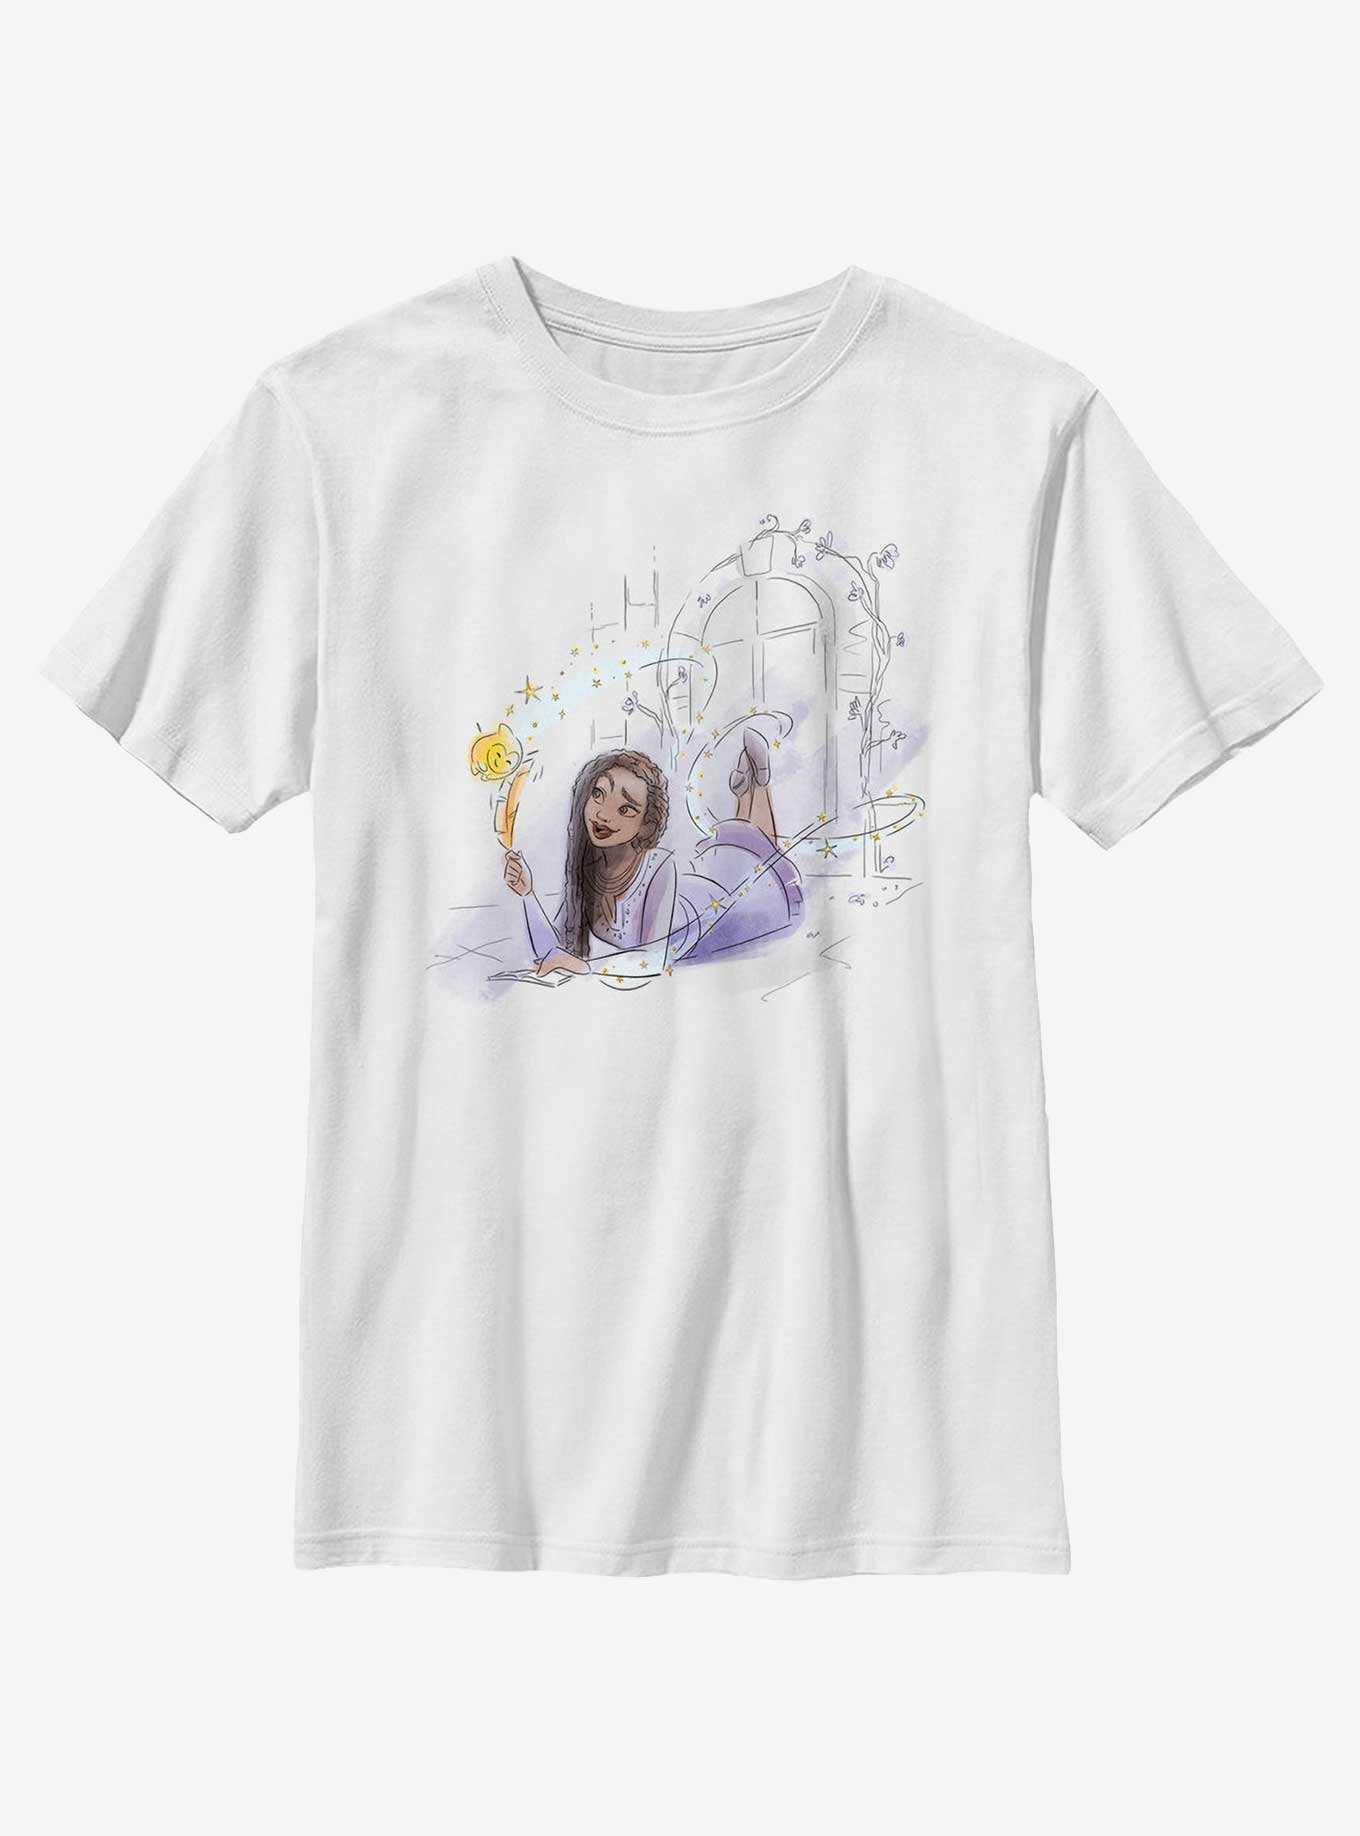 Disney Wish Watercolor Asha and Star Youth T-Shirt, , hi-res